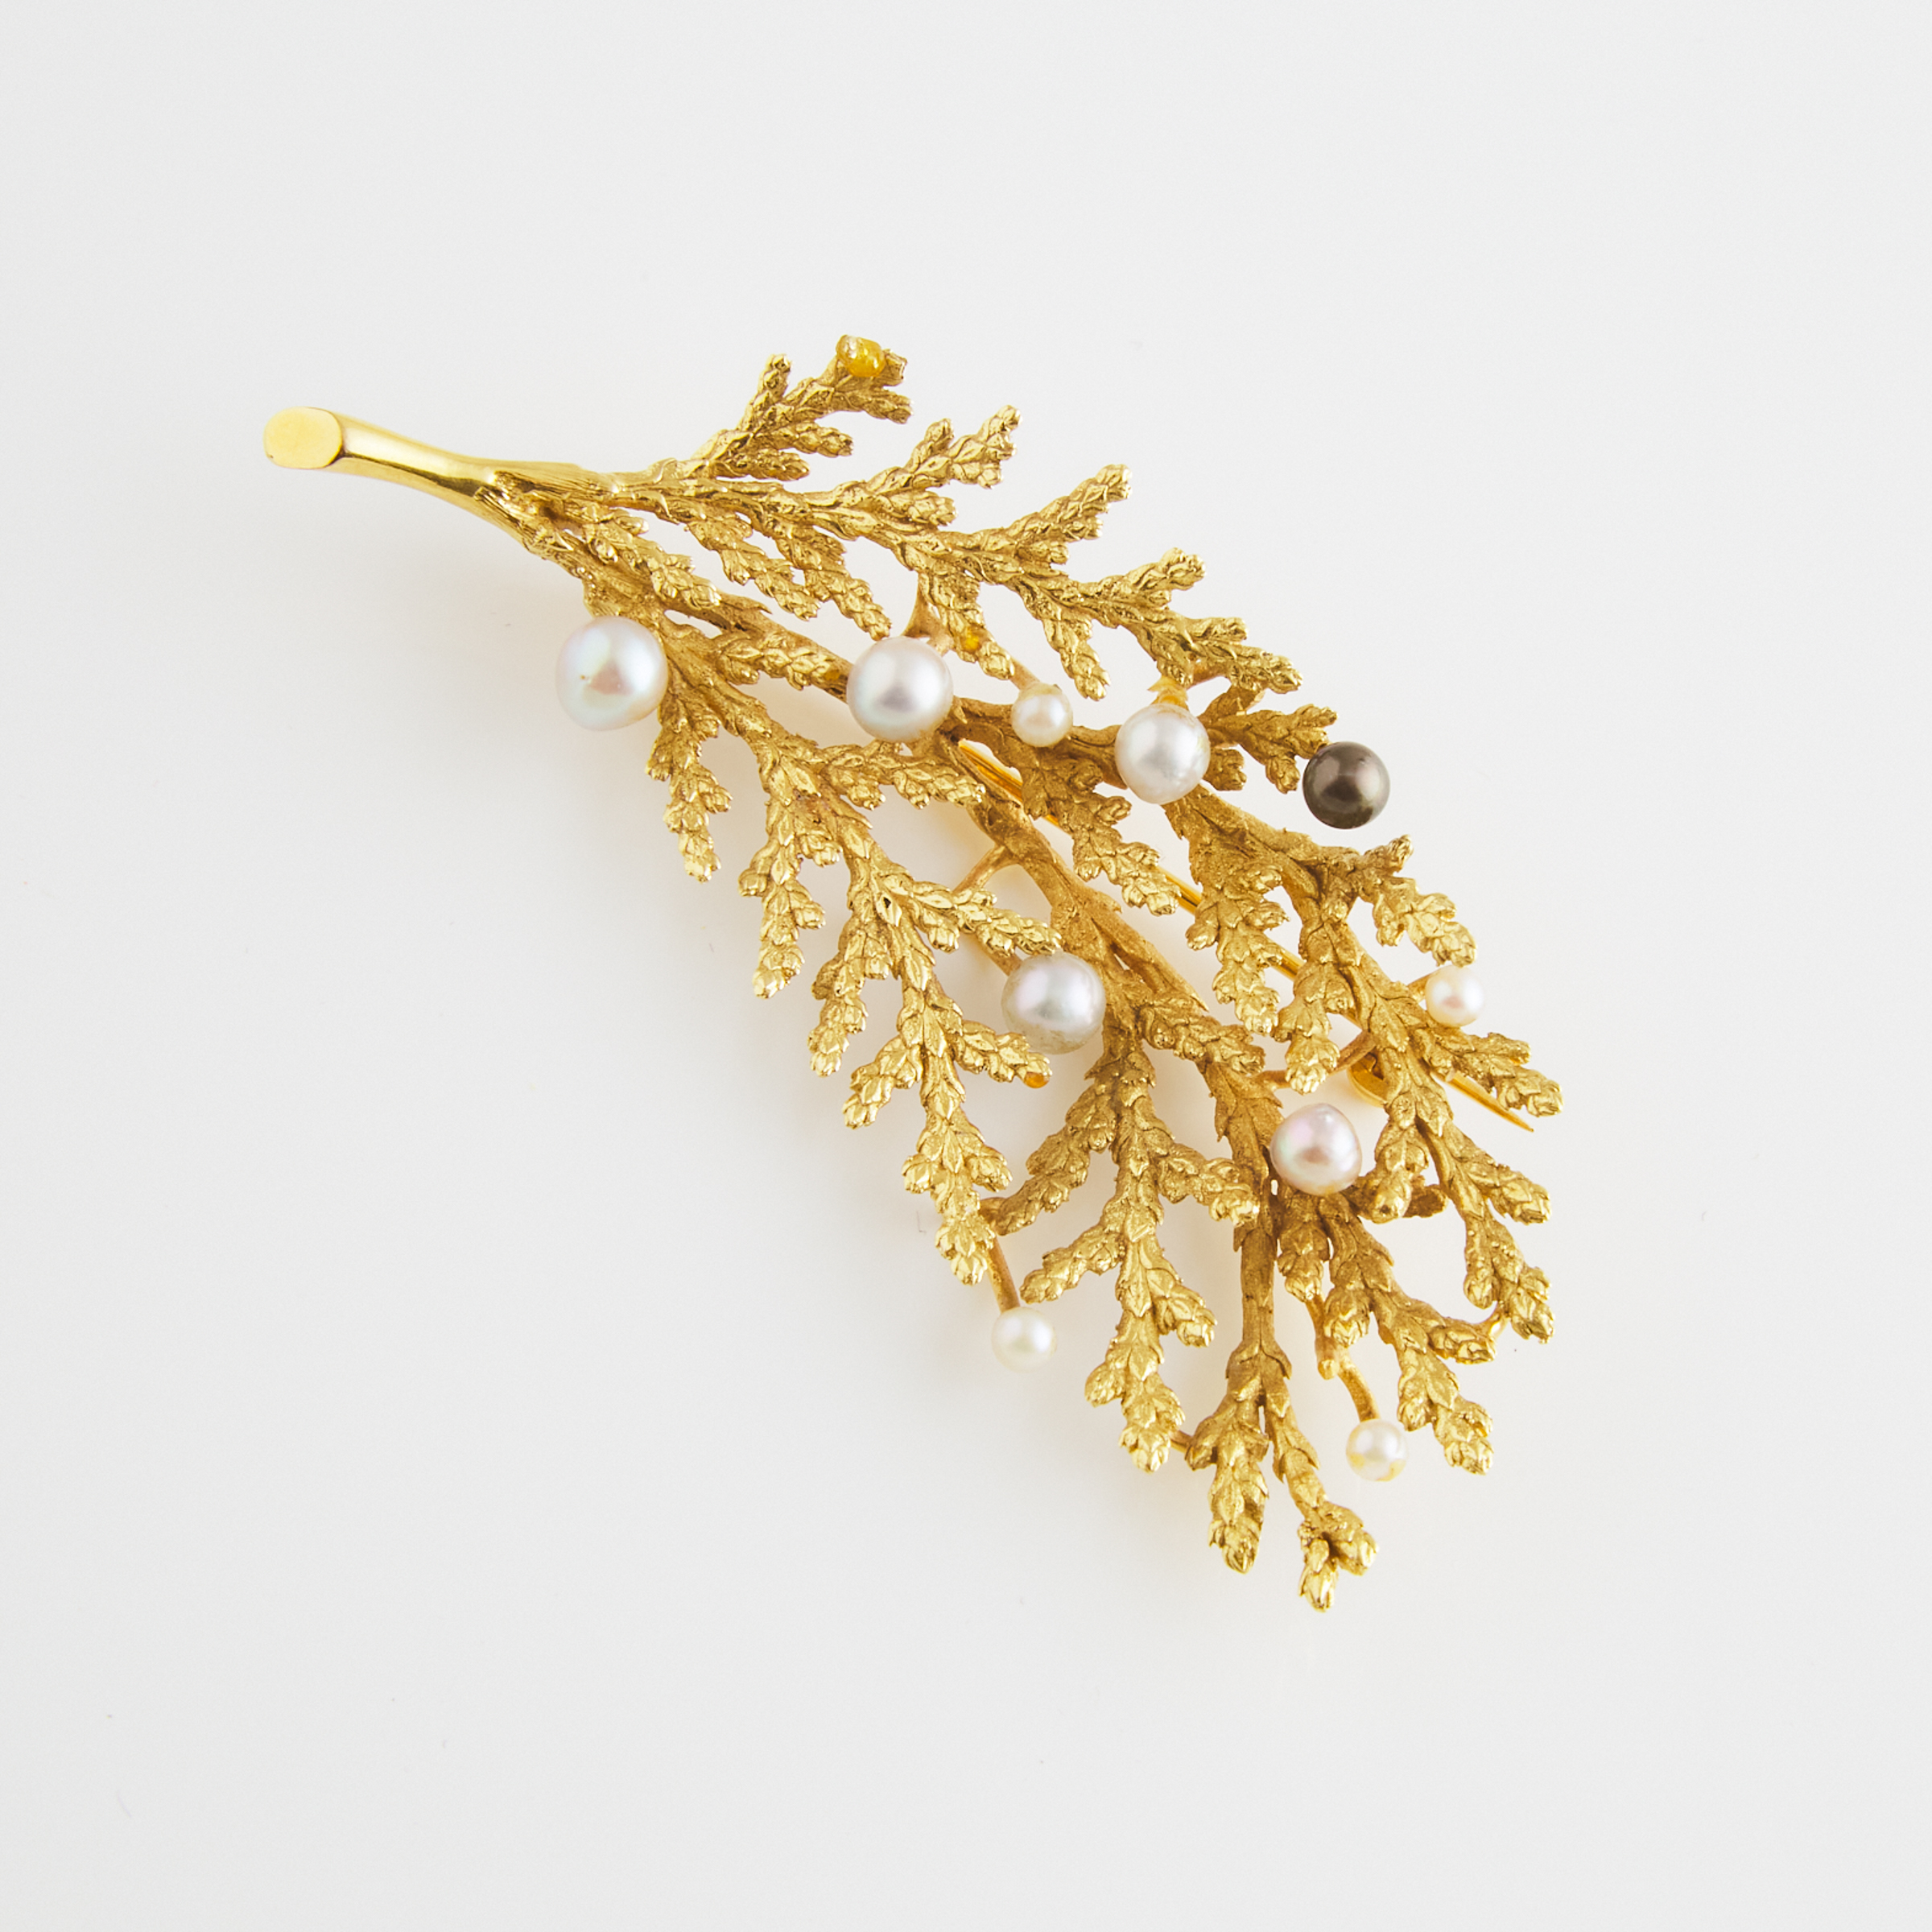 Portuguese 800 Grade Gold Leaf Brooch